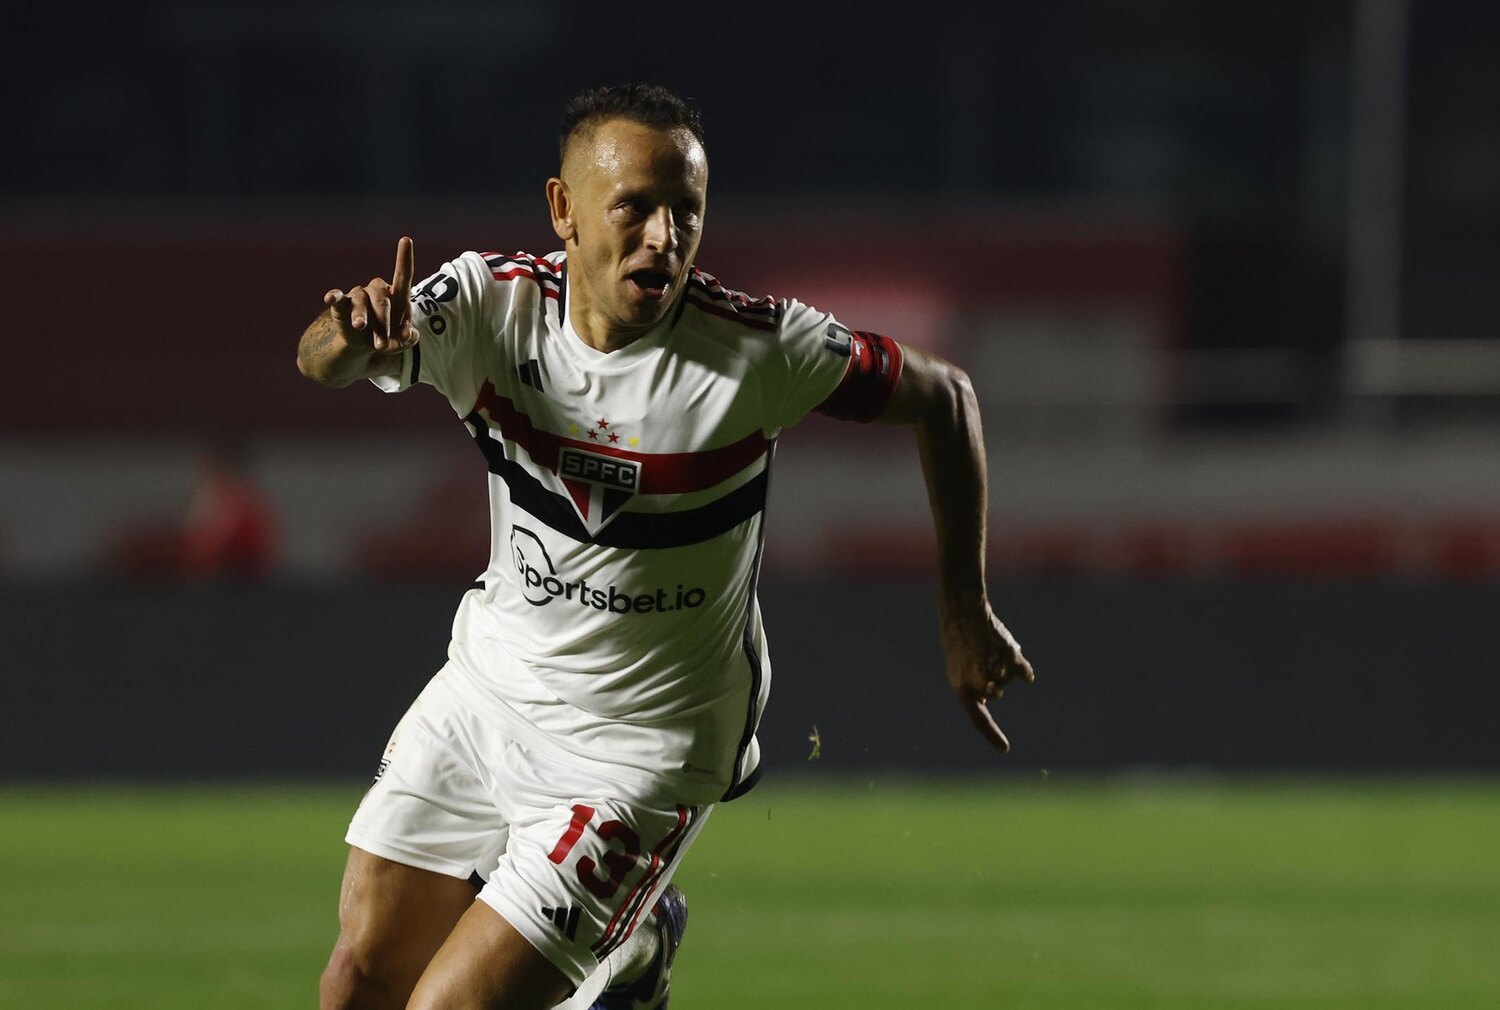 Isla se reapresenta ao Flamengo, mas não deve enfrentar o Vasco - Futebol -  R7 Campeonato Carioca